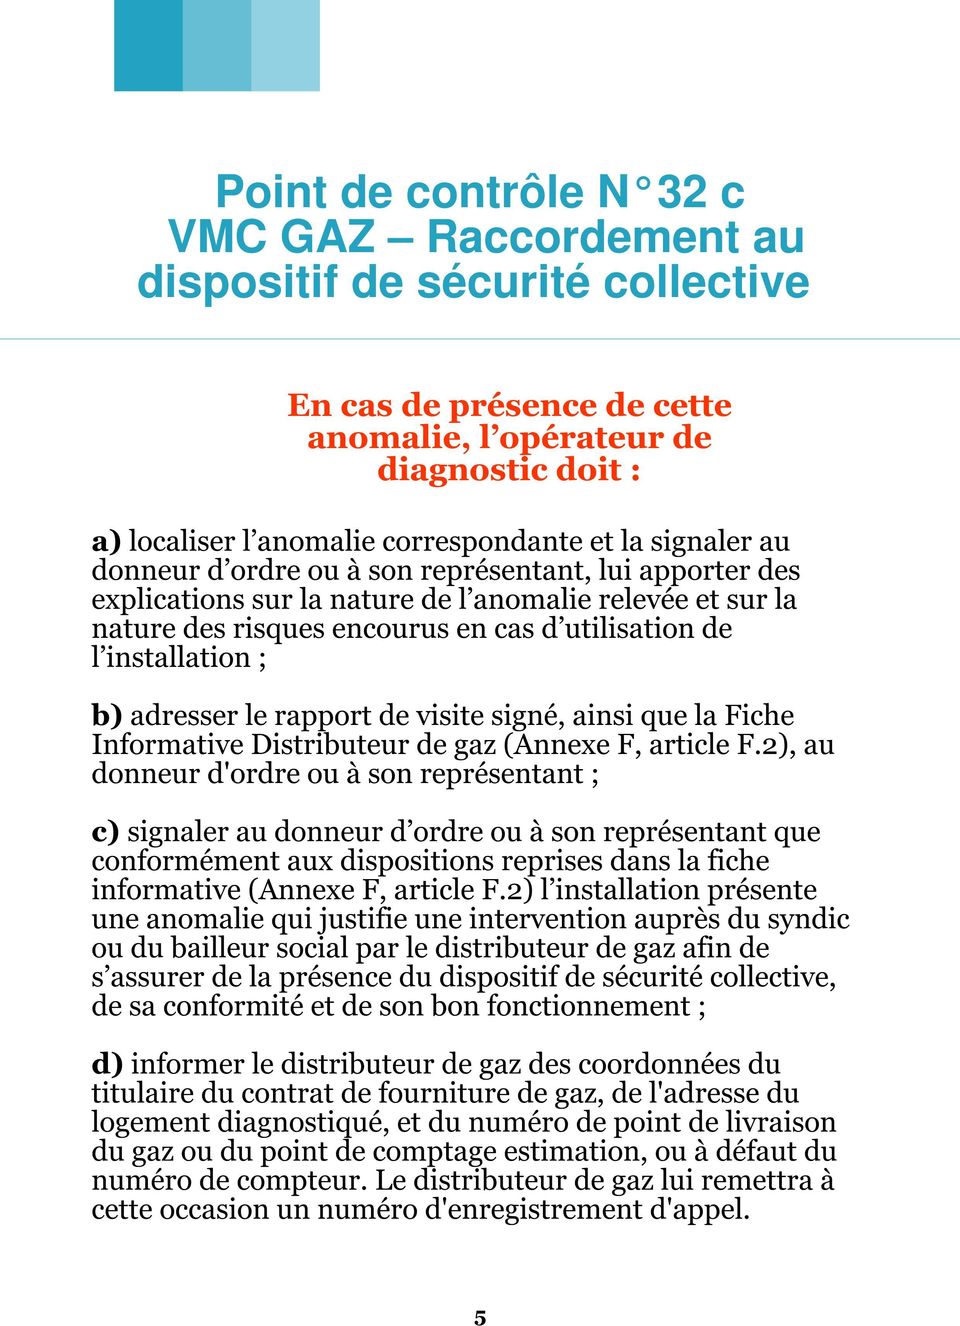 adresser le rapport de visite signé, ainsi que la Fiche Informative Distributeur de gaz (Annexe F, article F.